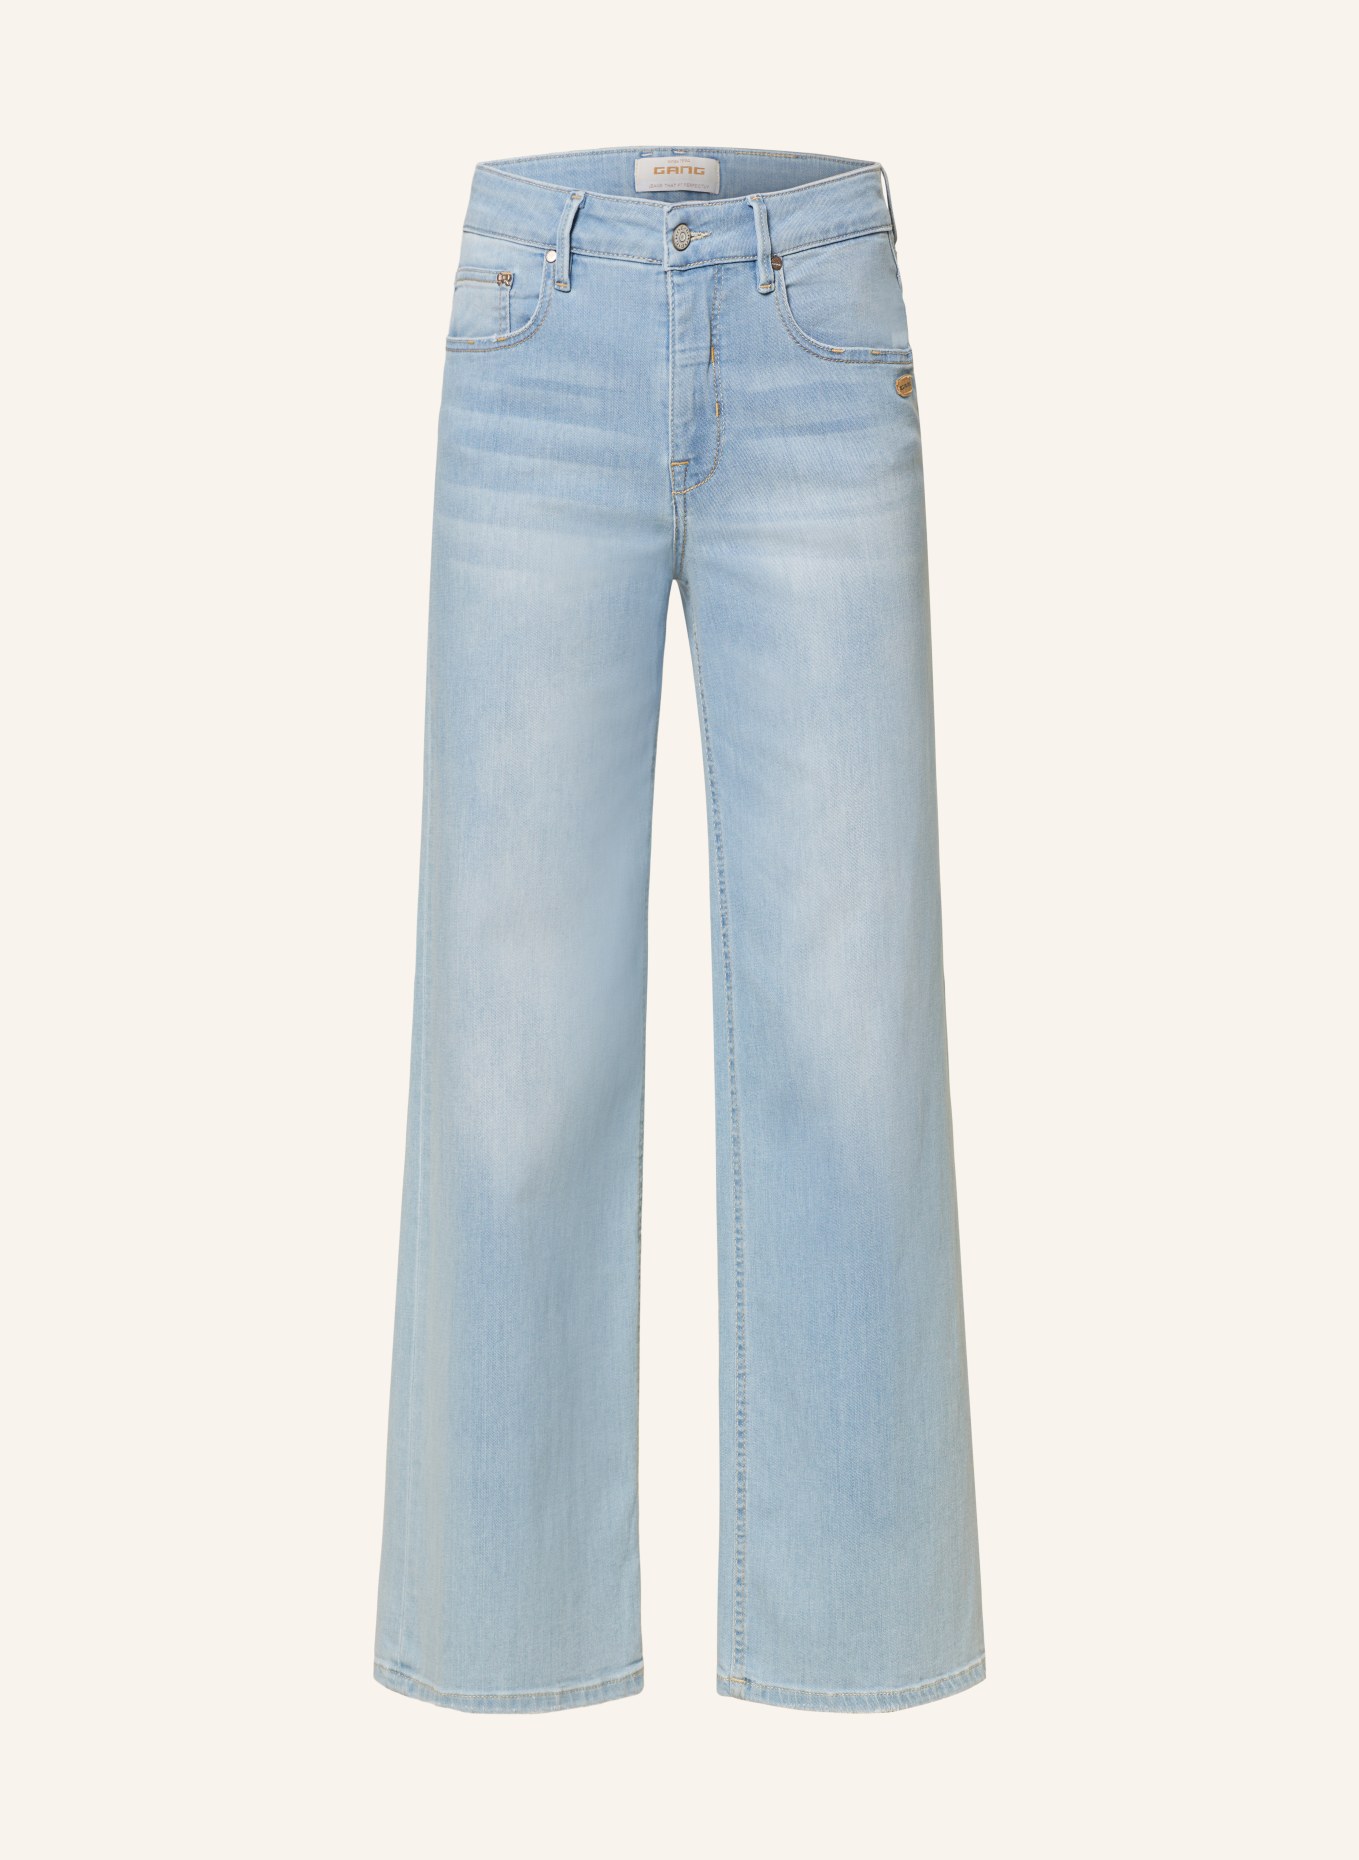 GANG Flared Jeans CARLOTTA, Farbe: 7314 love light wash (Bild 1)